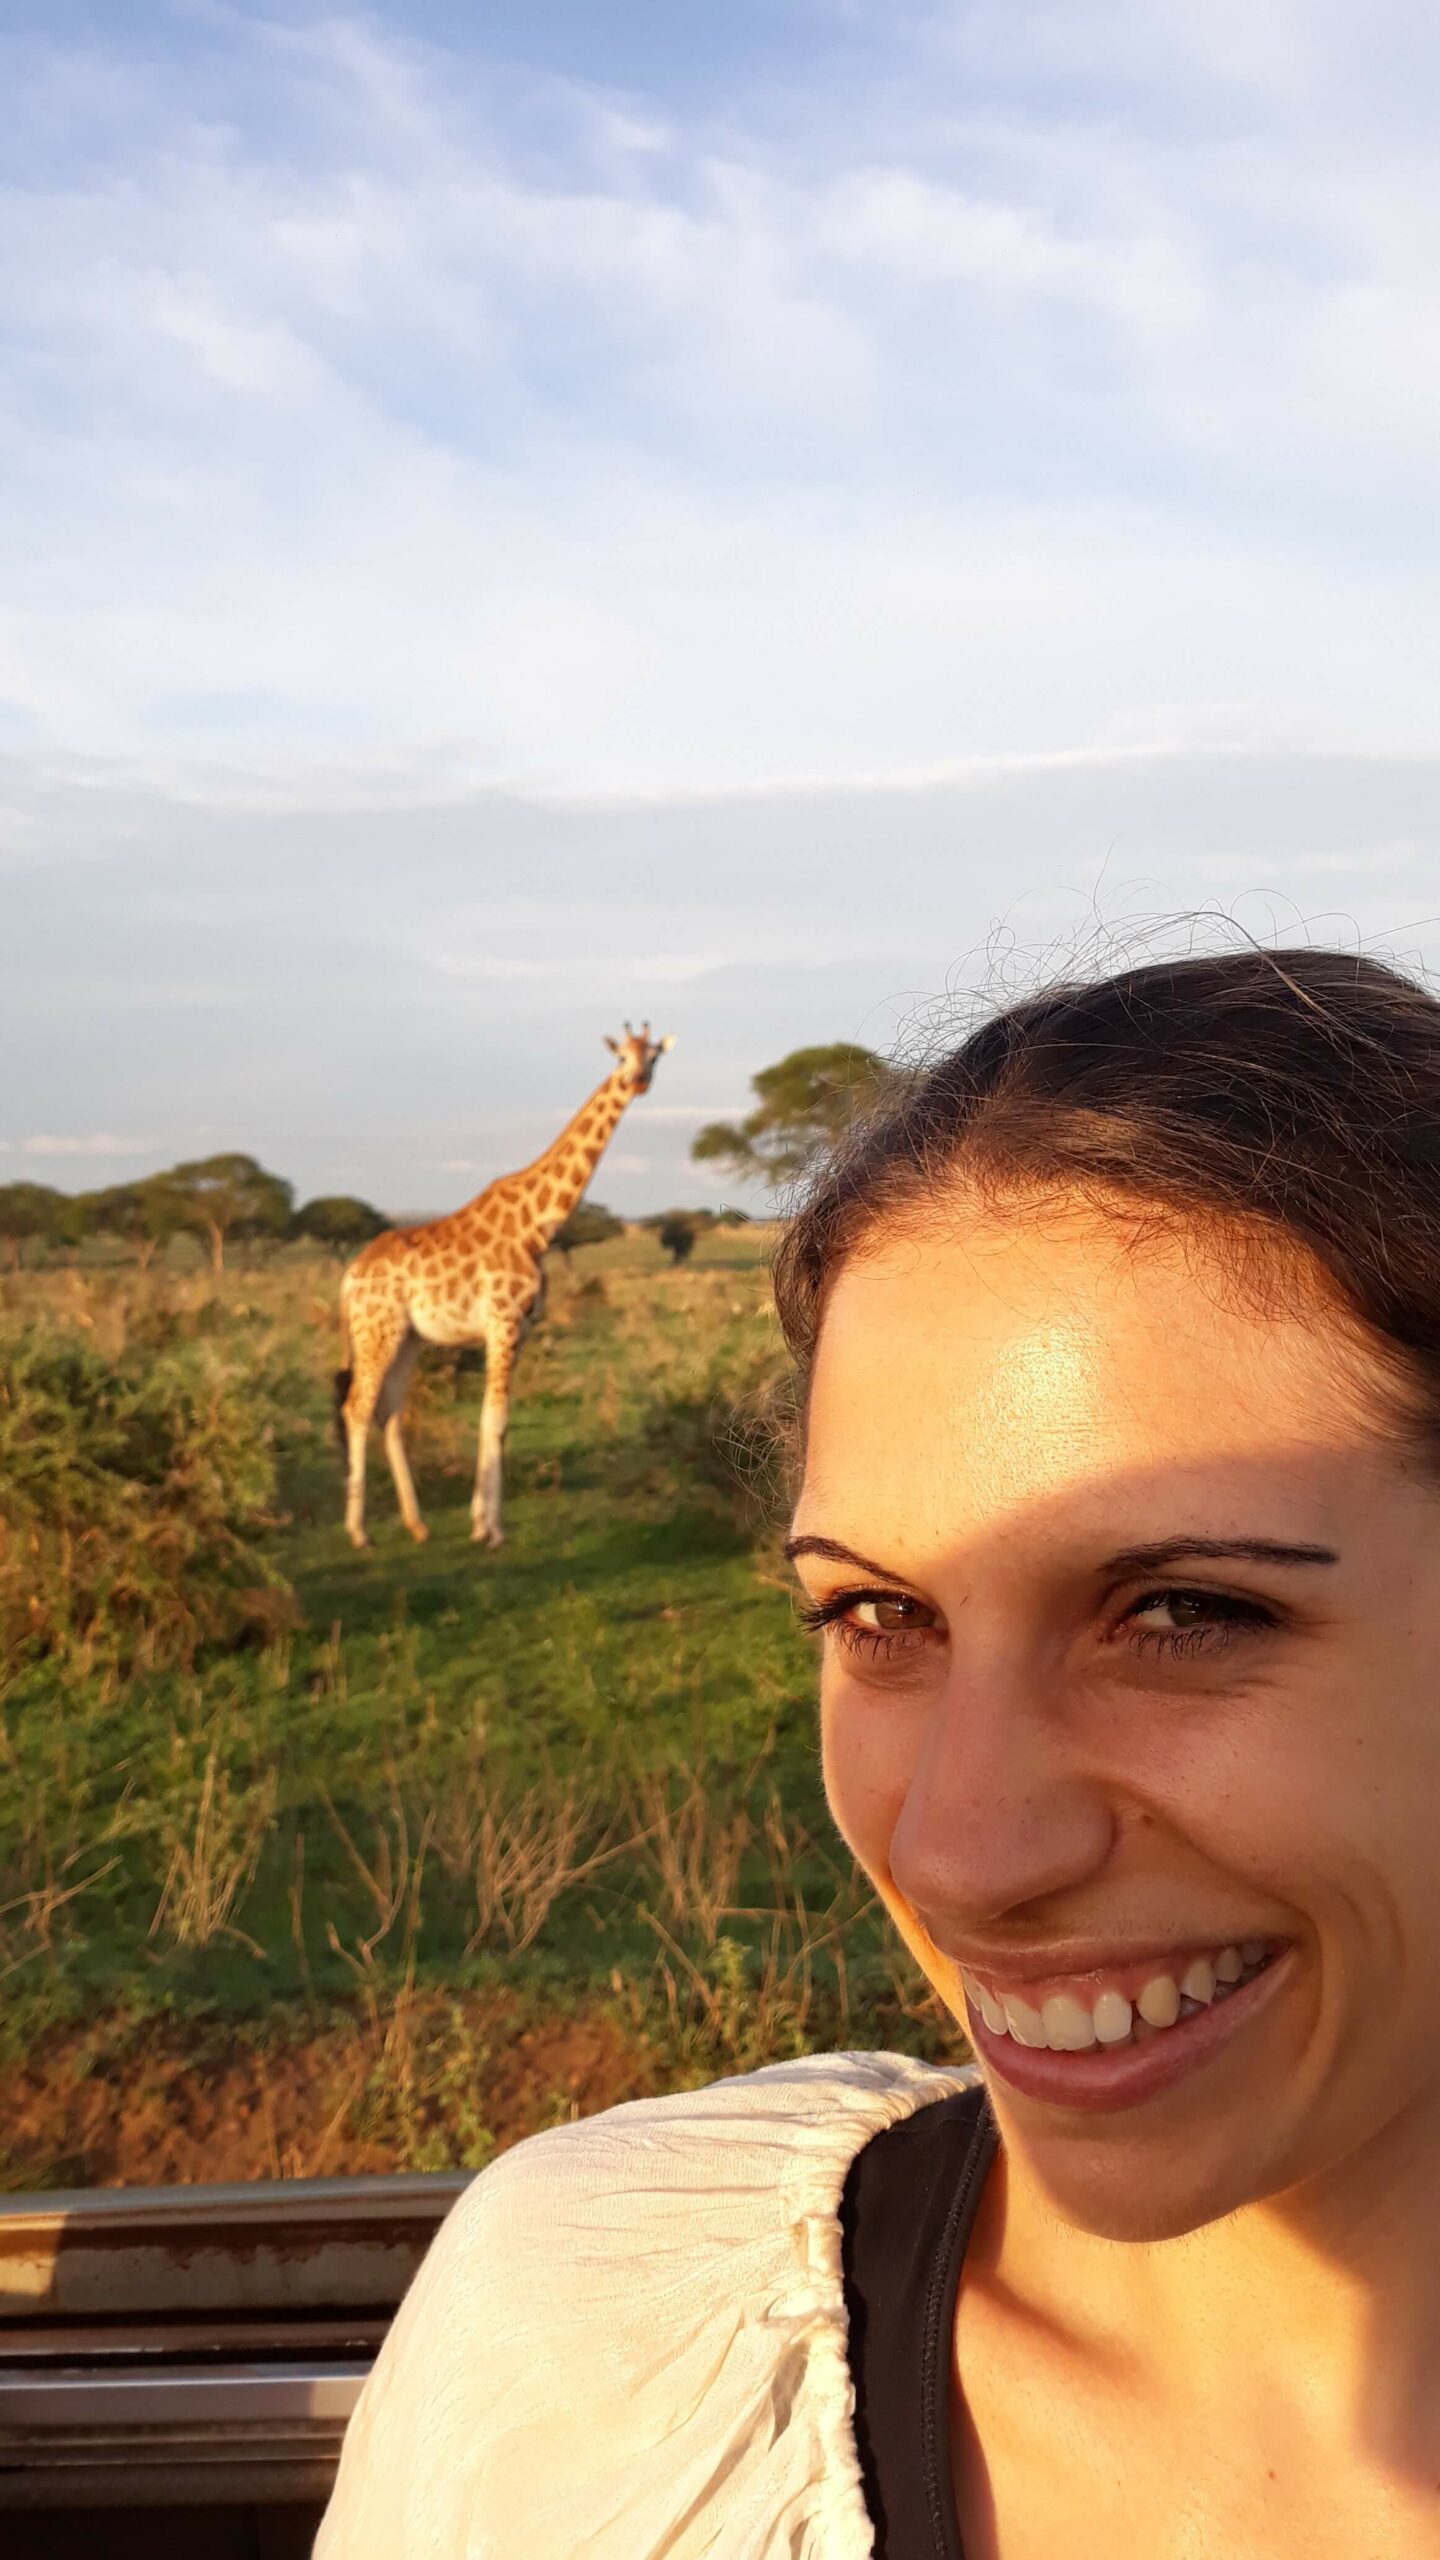 Reisende mit Giraffe im Hintergrund